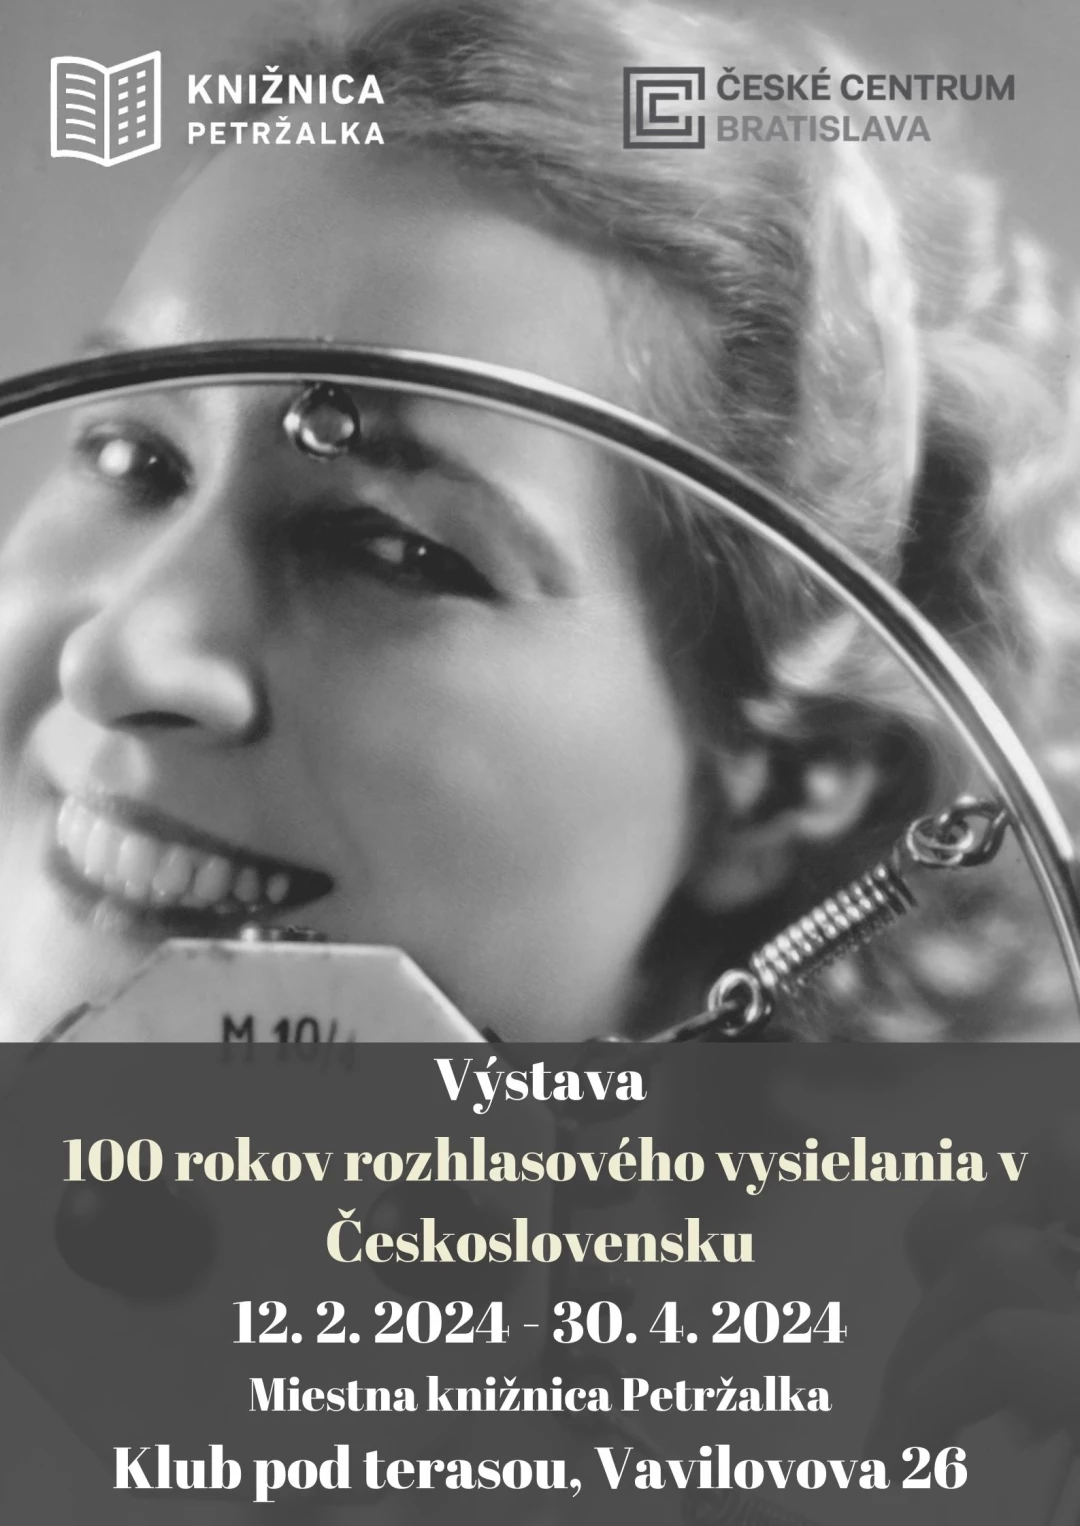 100 let rozhlasového vysílání v Československu v Petržalce
